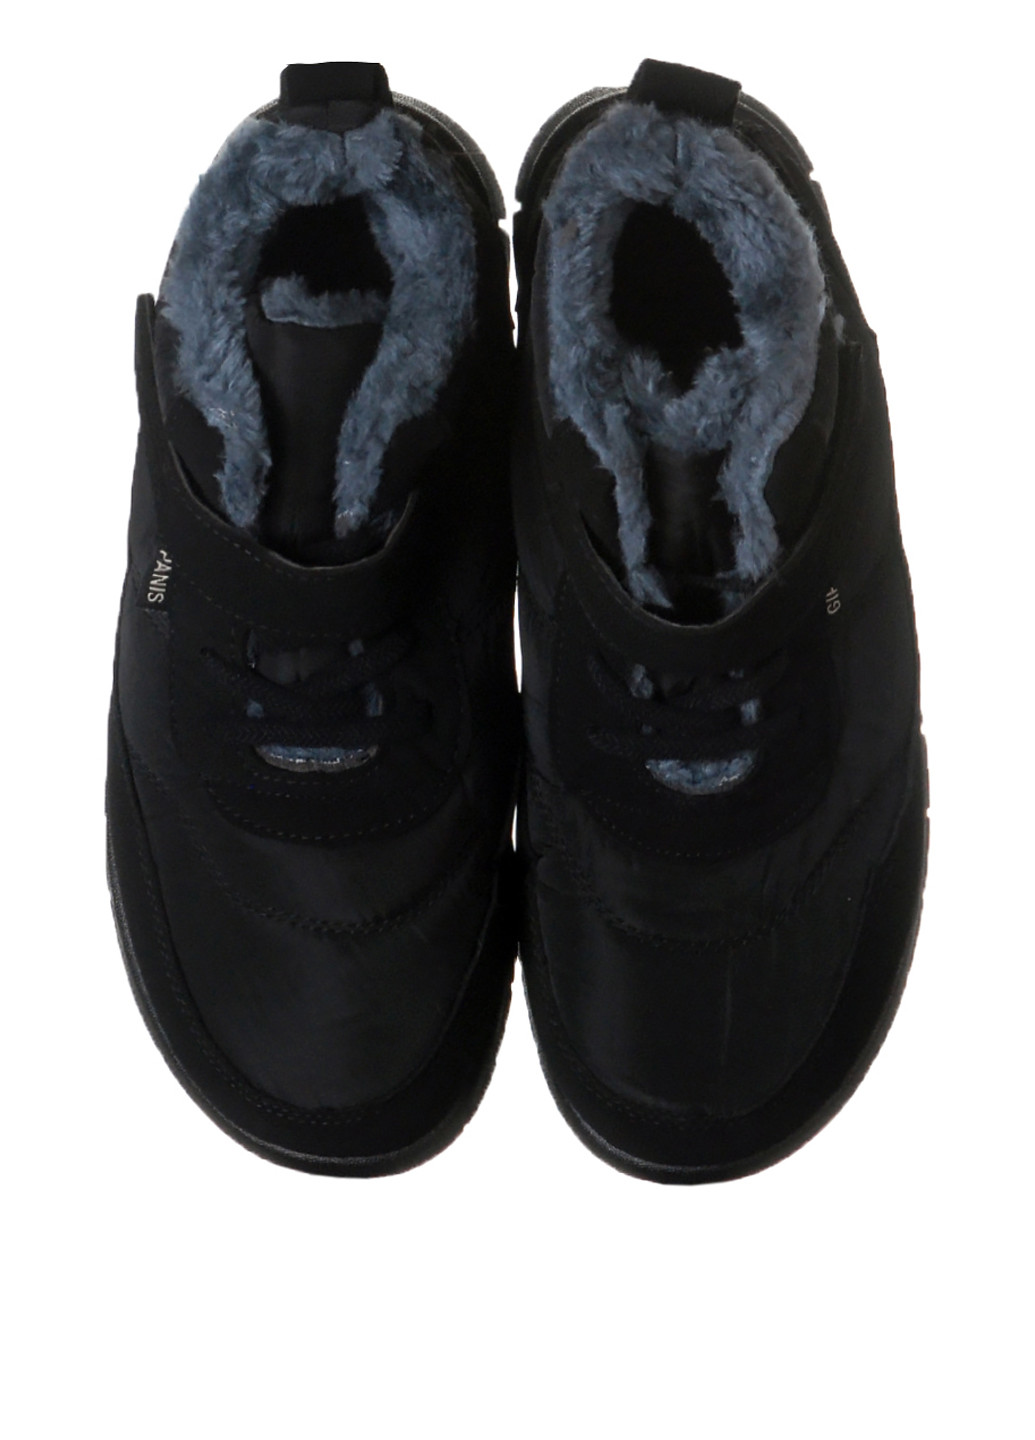 Зимние ботинки Bromen без декора тканевые, из искусственного нубука